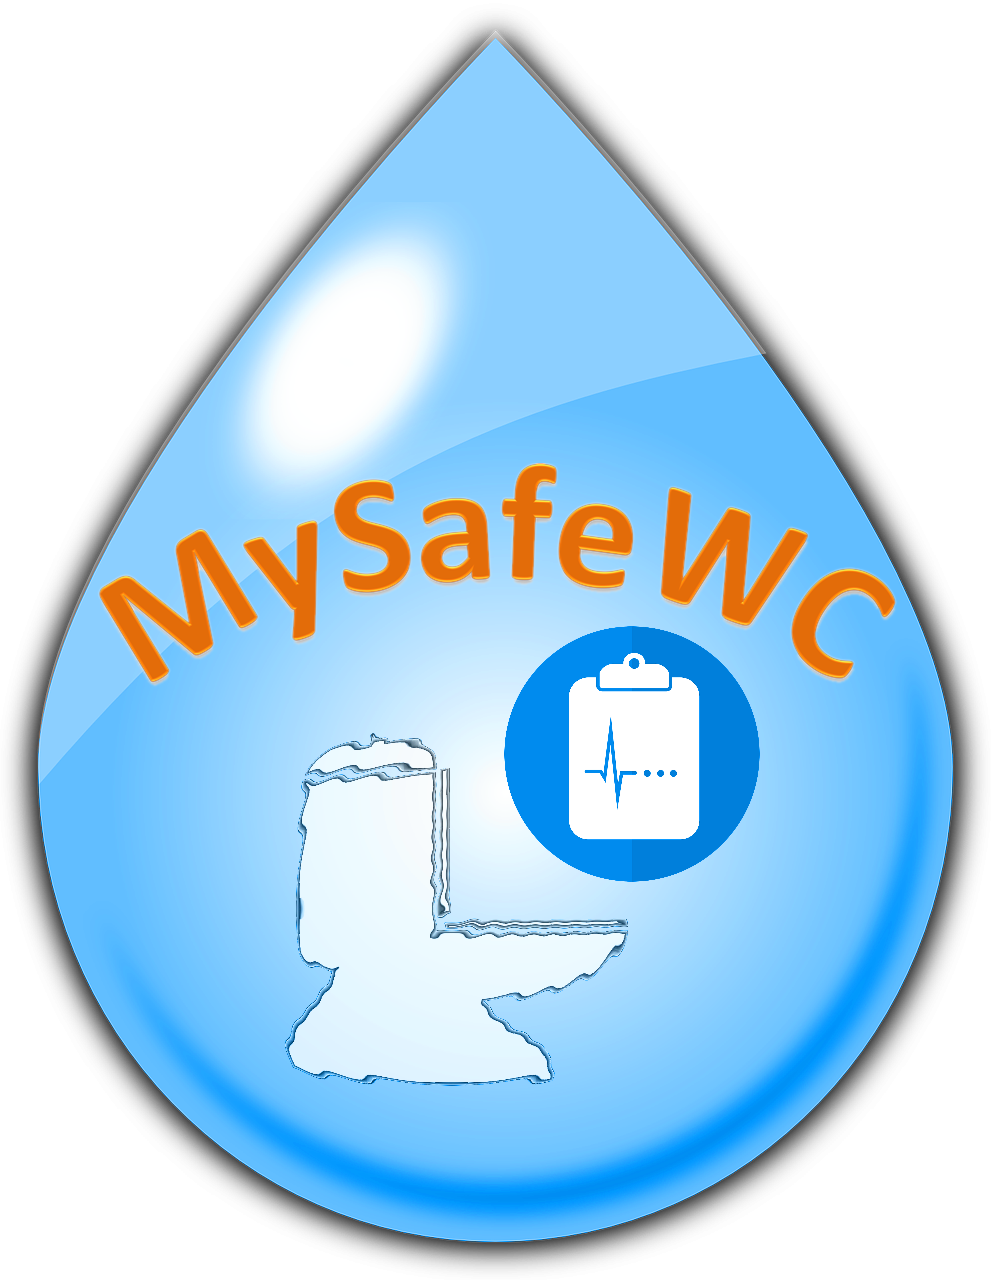 MySafeWC logo